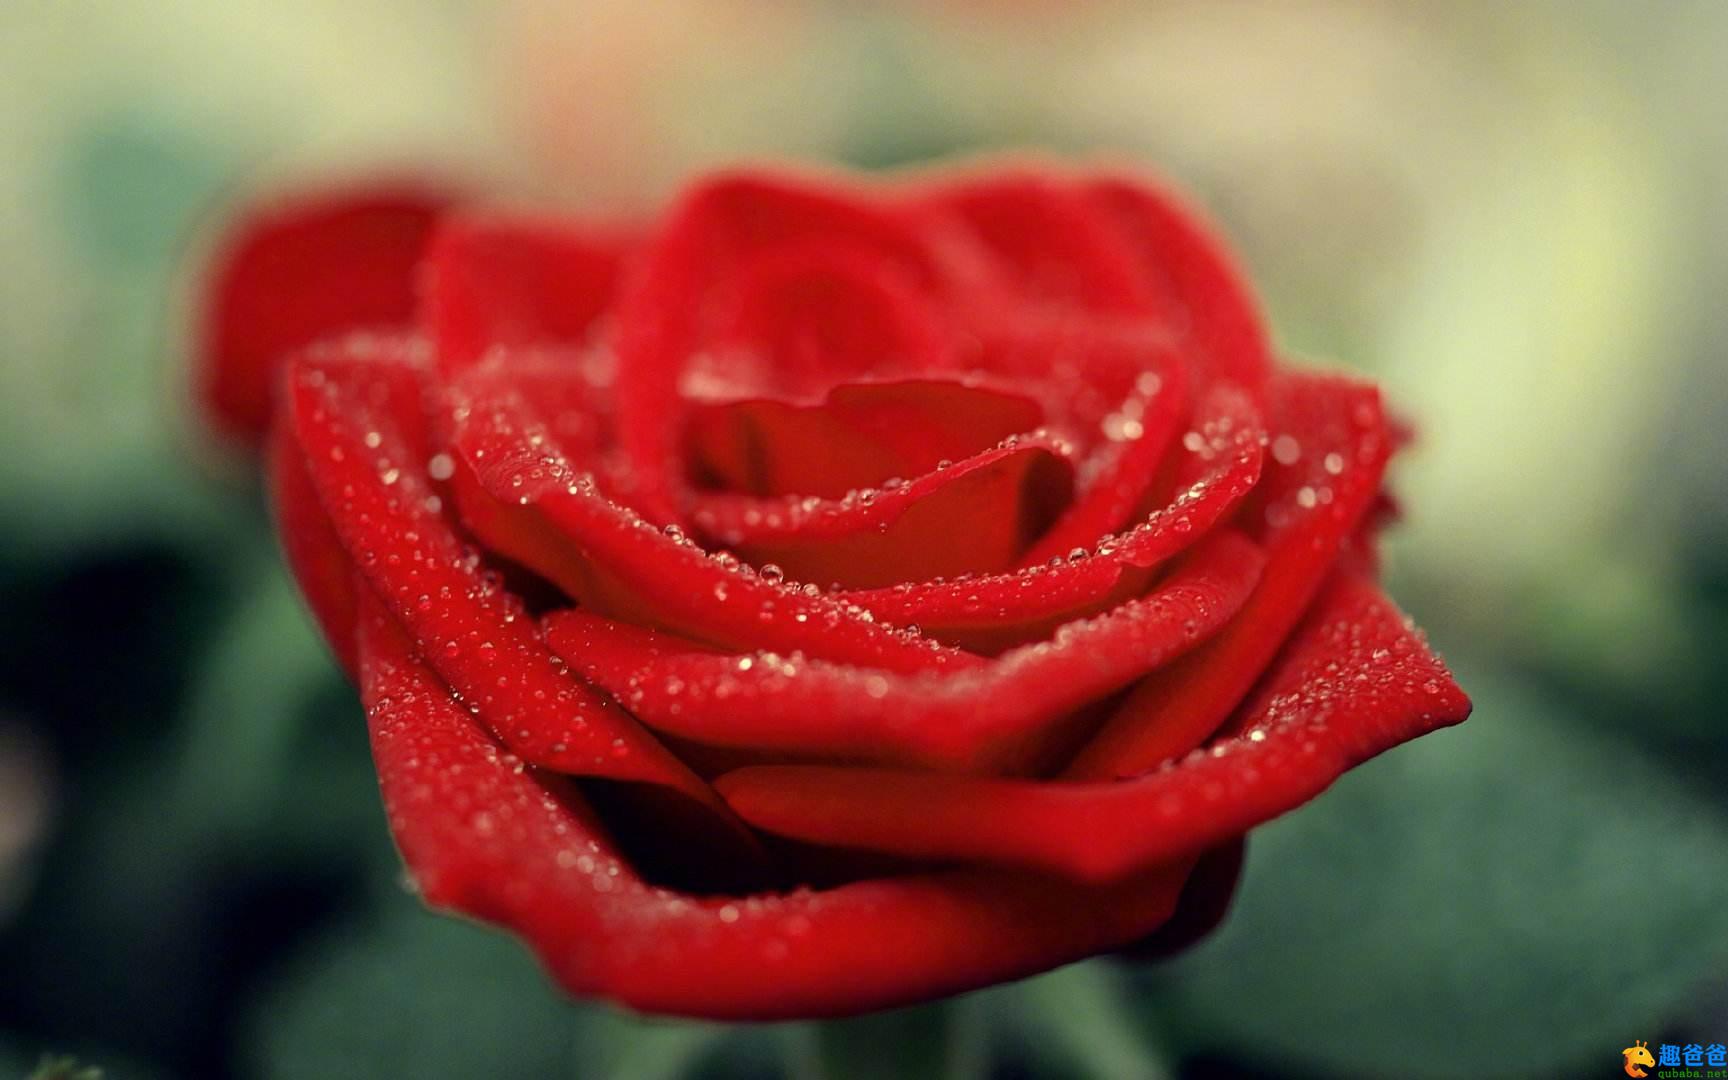 世界上最美丽的一朵玫瑰花